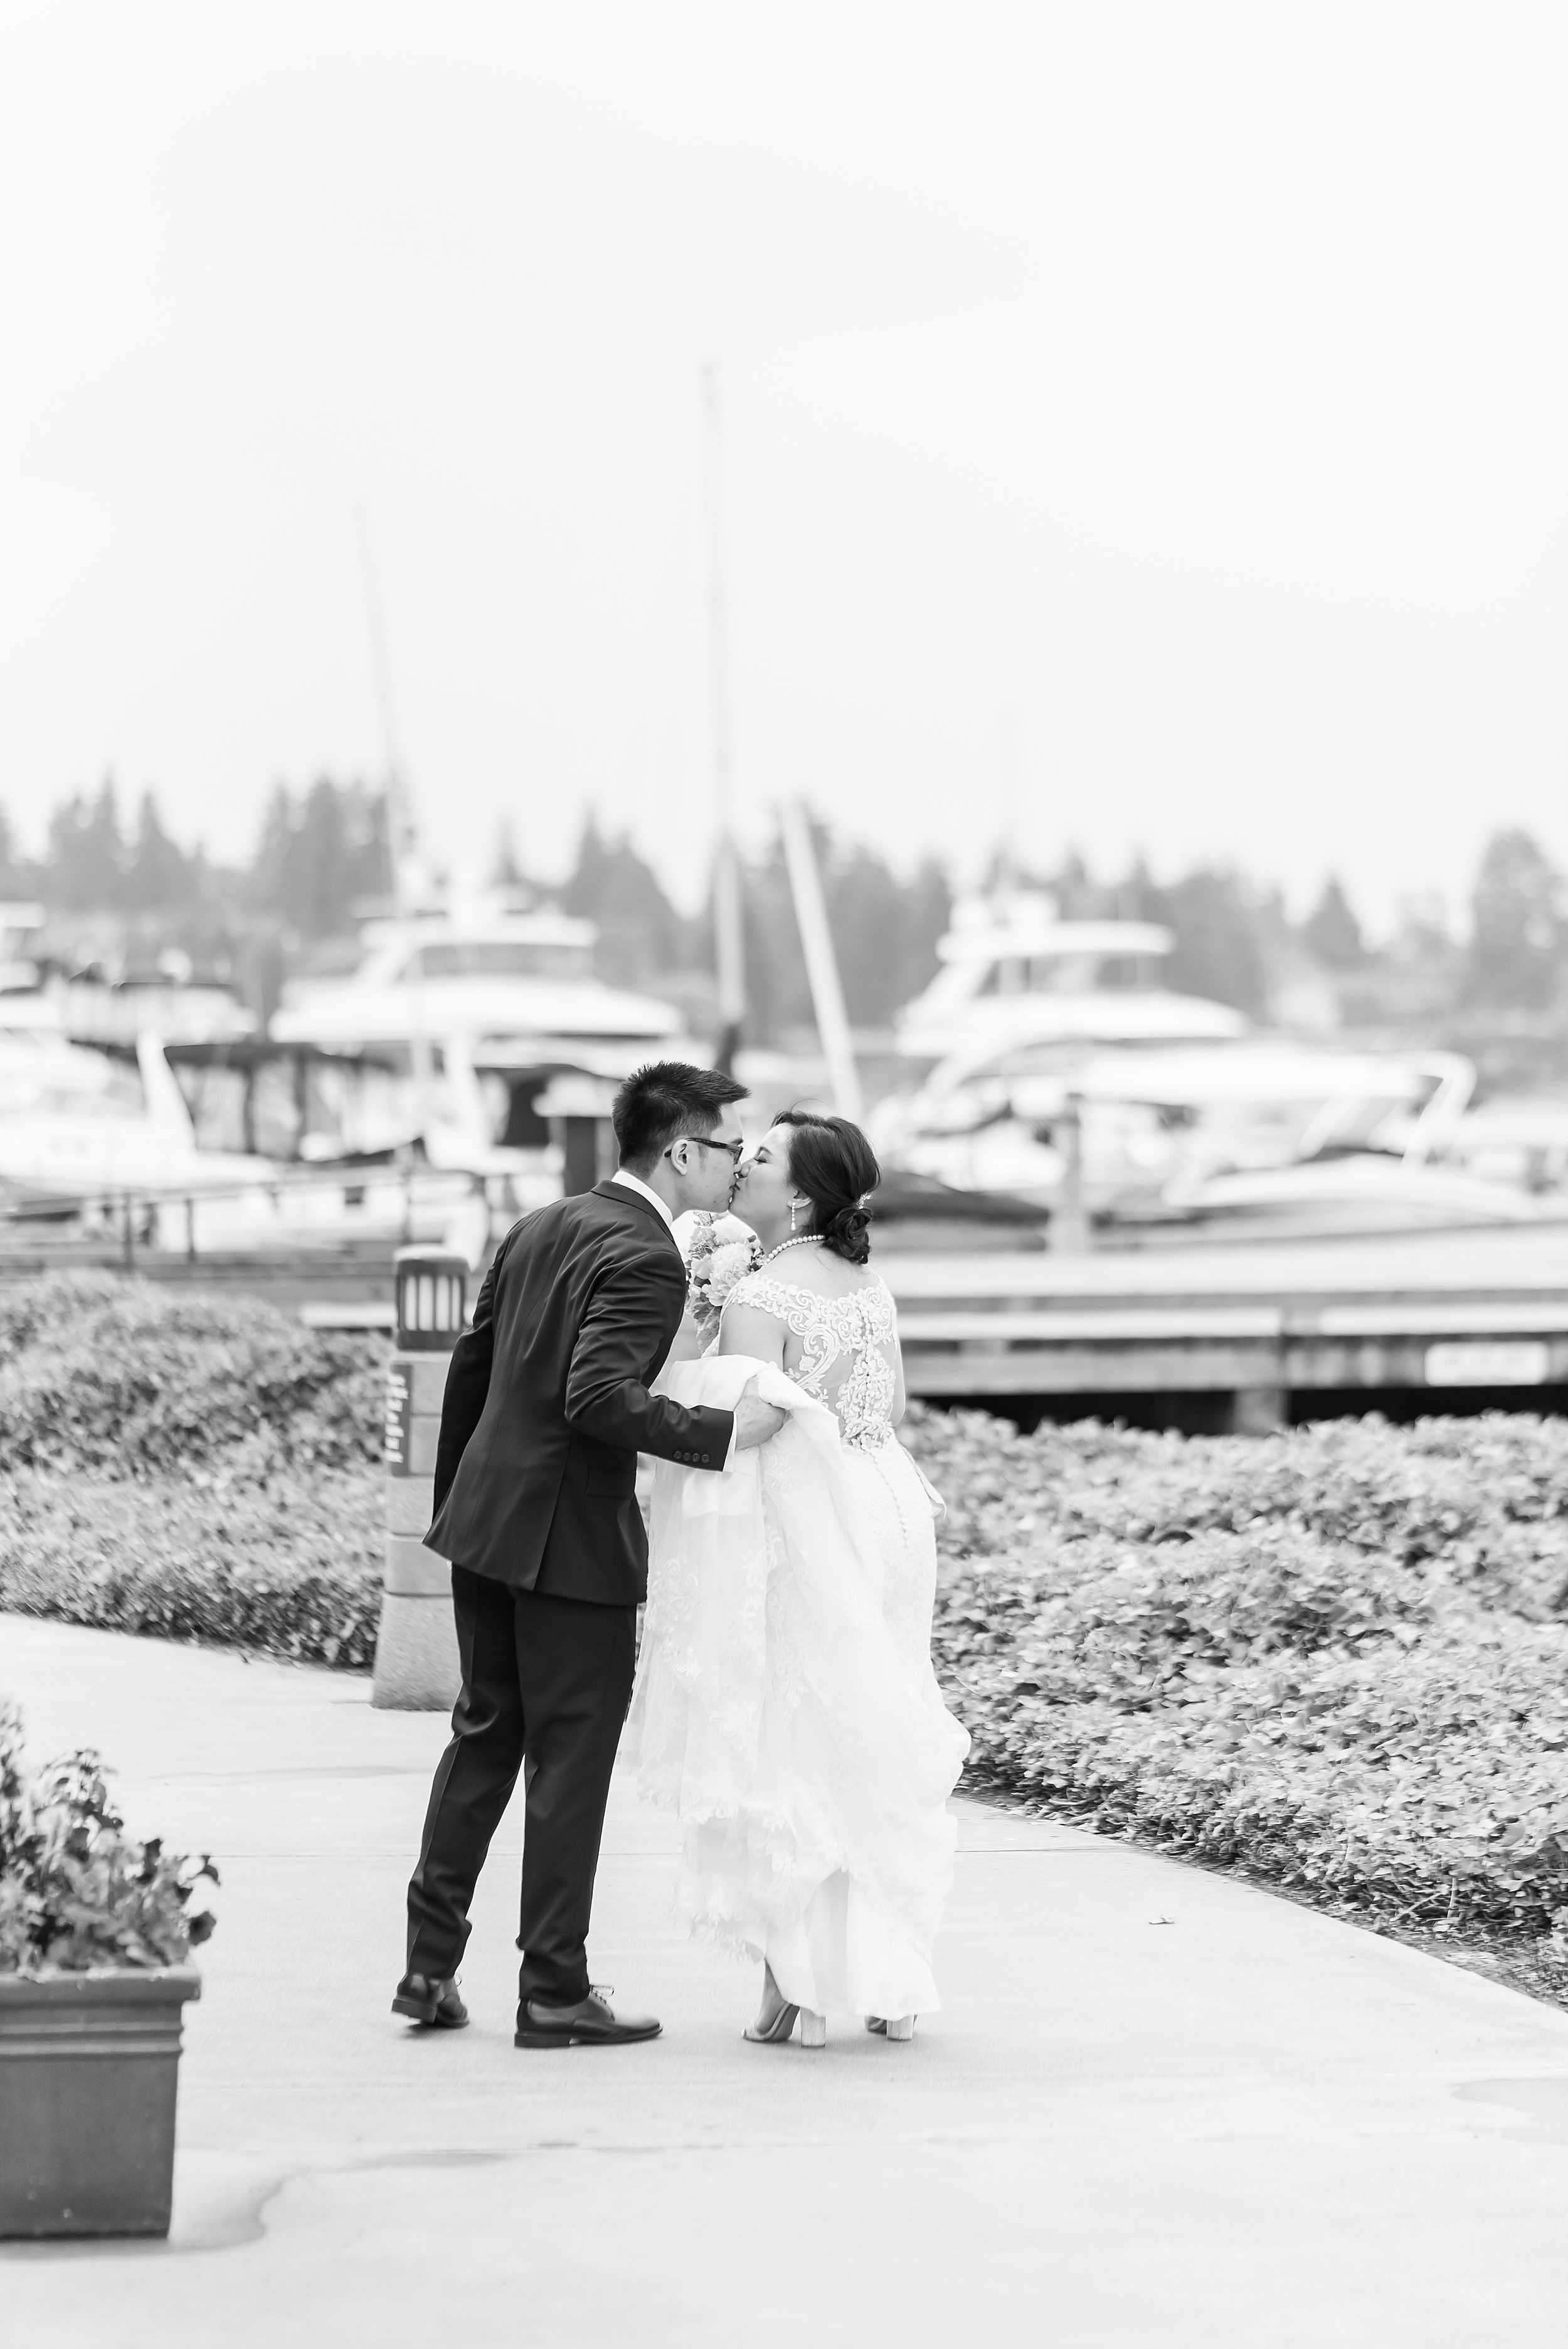 Woodmark Hotel Waterfront Wedding. Seattle Wedding Venues.